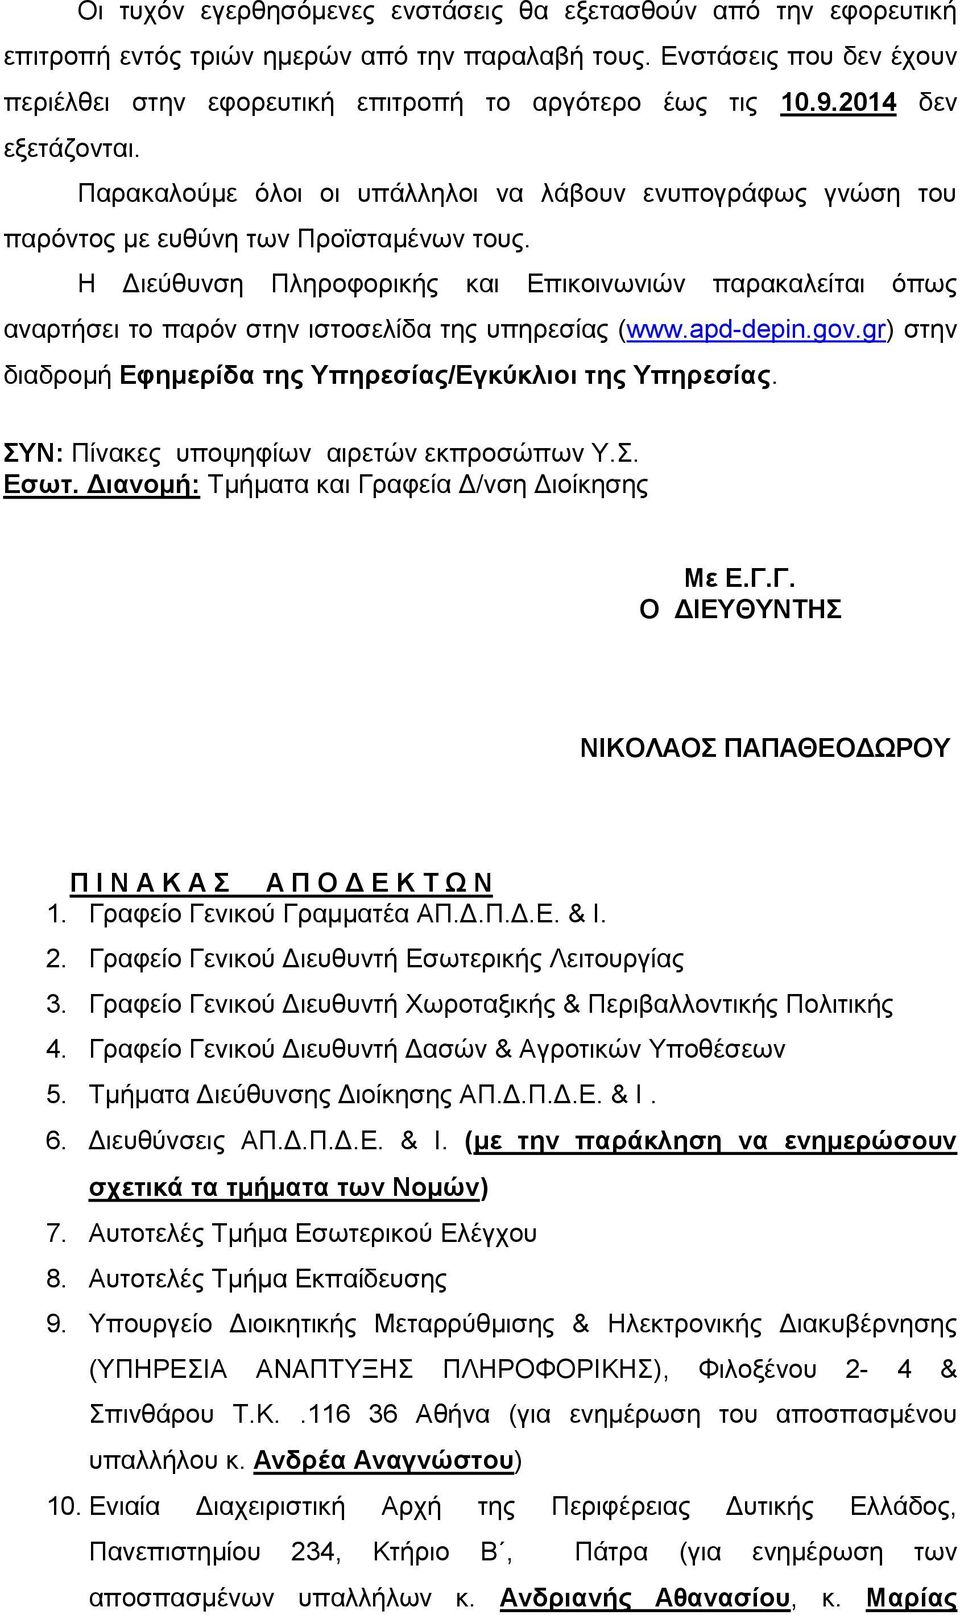 Η Διεύθυνση Πληροφορικής και Επικοινωνιών παρακαλείται όπως αναρτήσει το παρόν στην ιστοσελίδα της υπηρεσίας (www.apd-depin.gov.gr) στην διαδρομή Εφημερίδα της Υπηρεσίας/Εγκύκλιοι της Υπηρεσίας.